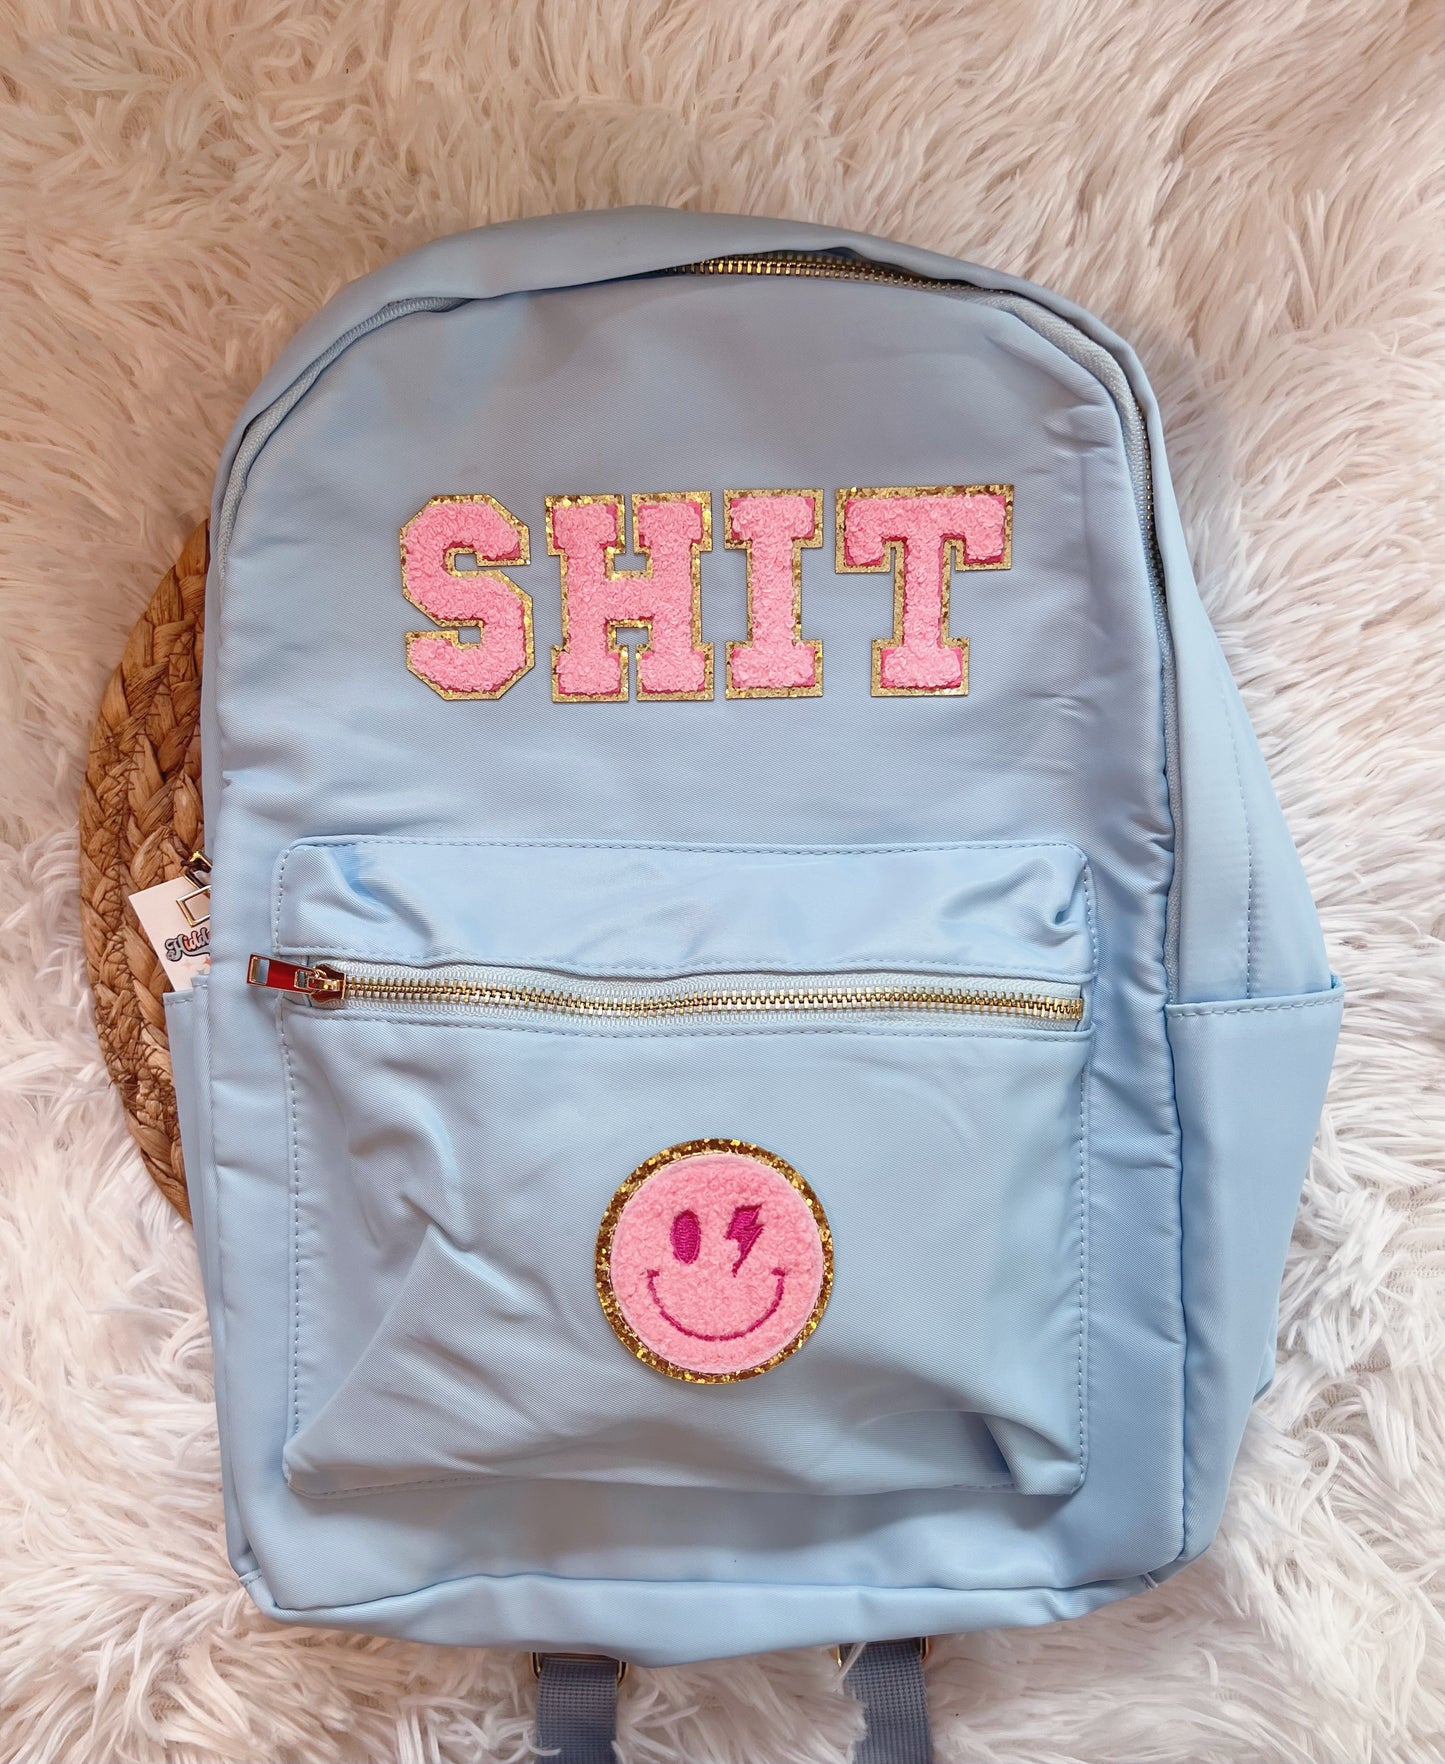 Sh!t Nylon Backpack